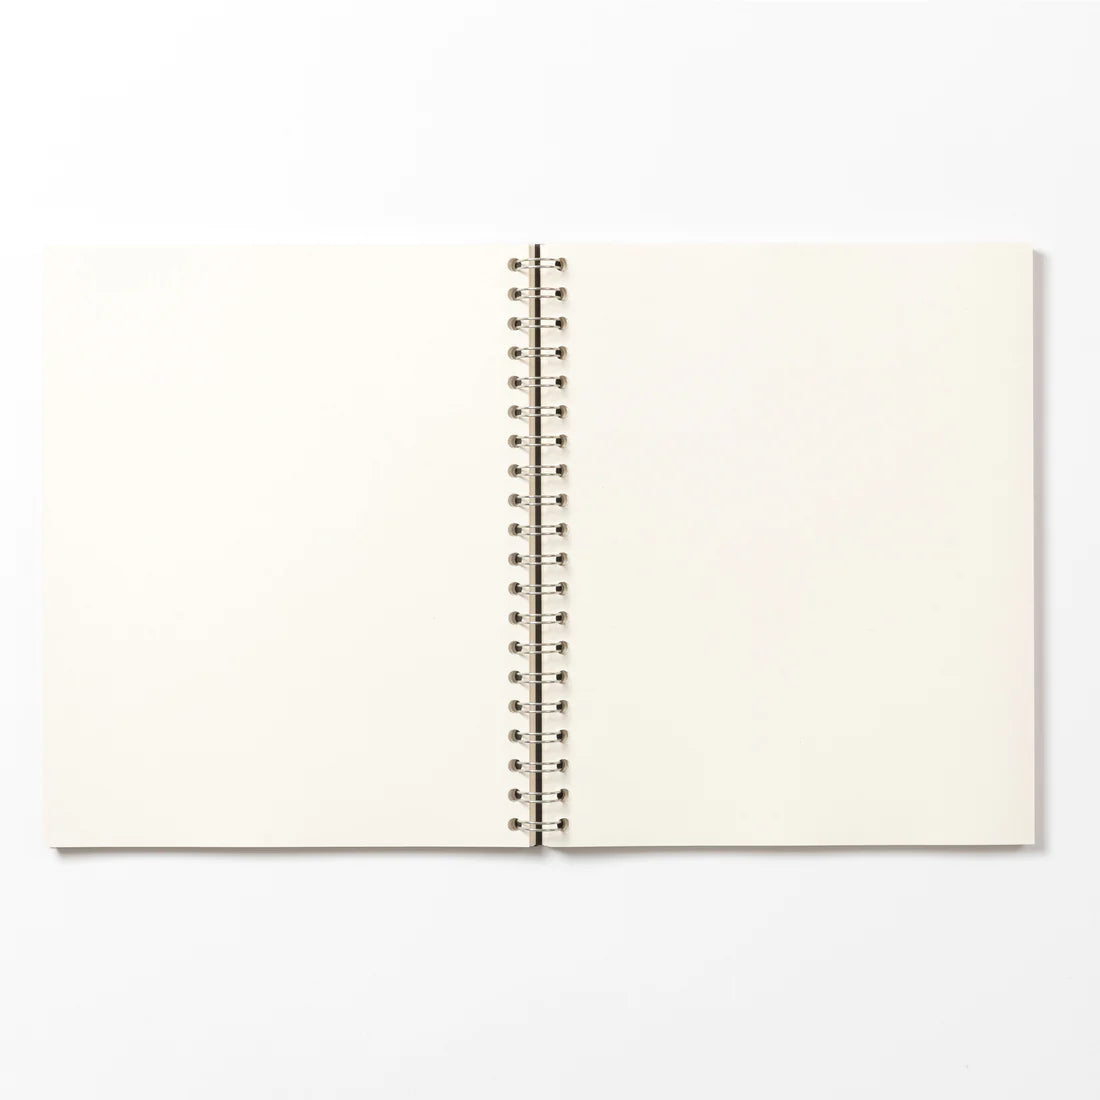 A5 Wirebound Notebook - Plain